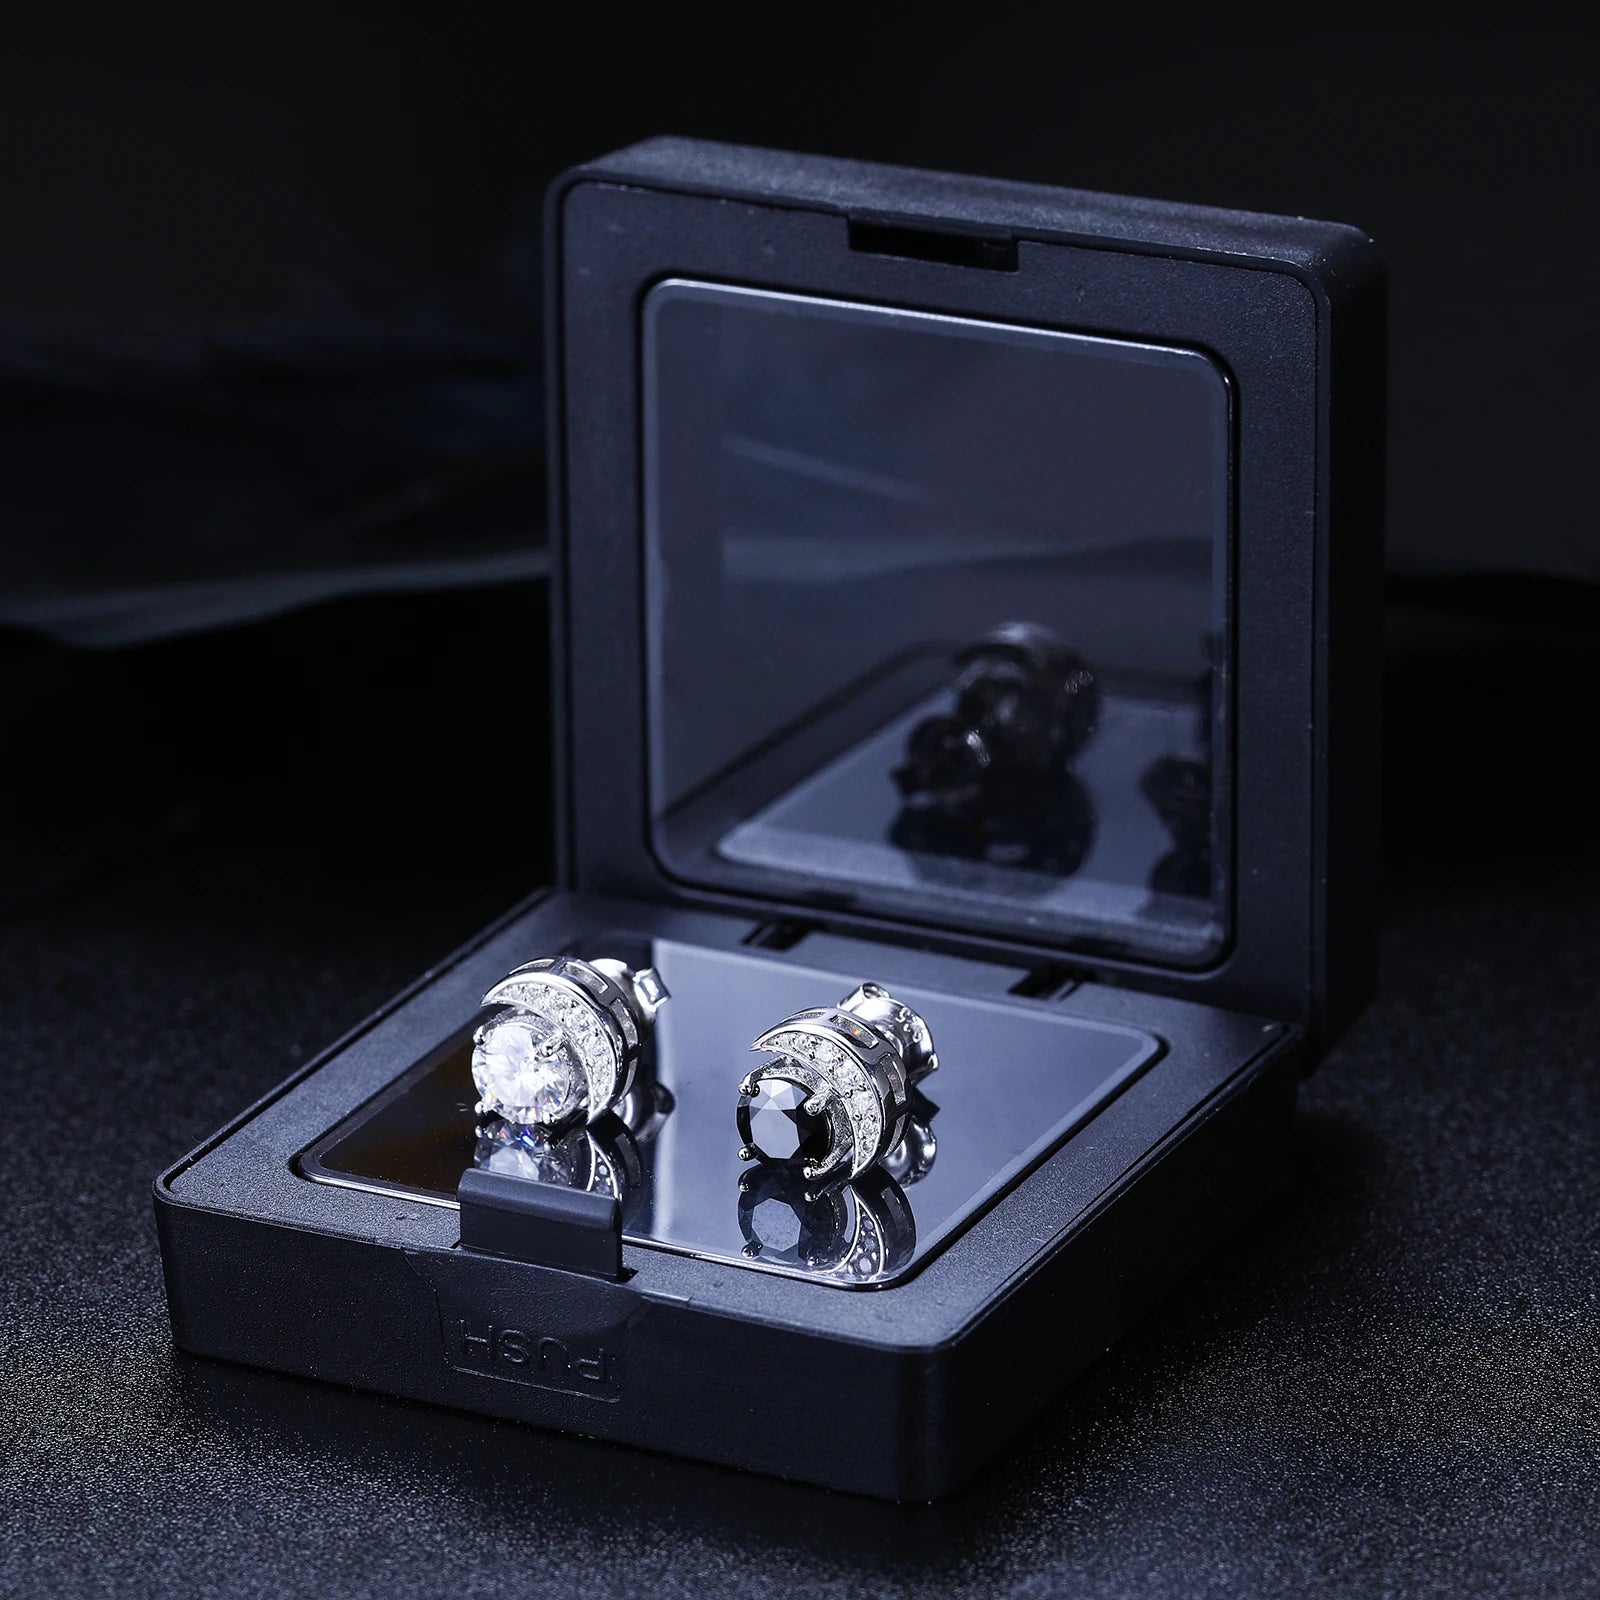 New S925 VVS Black White Moissanite Moon Stud Earrings